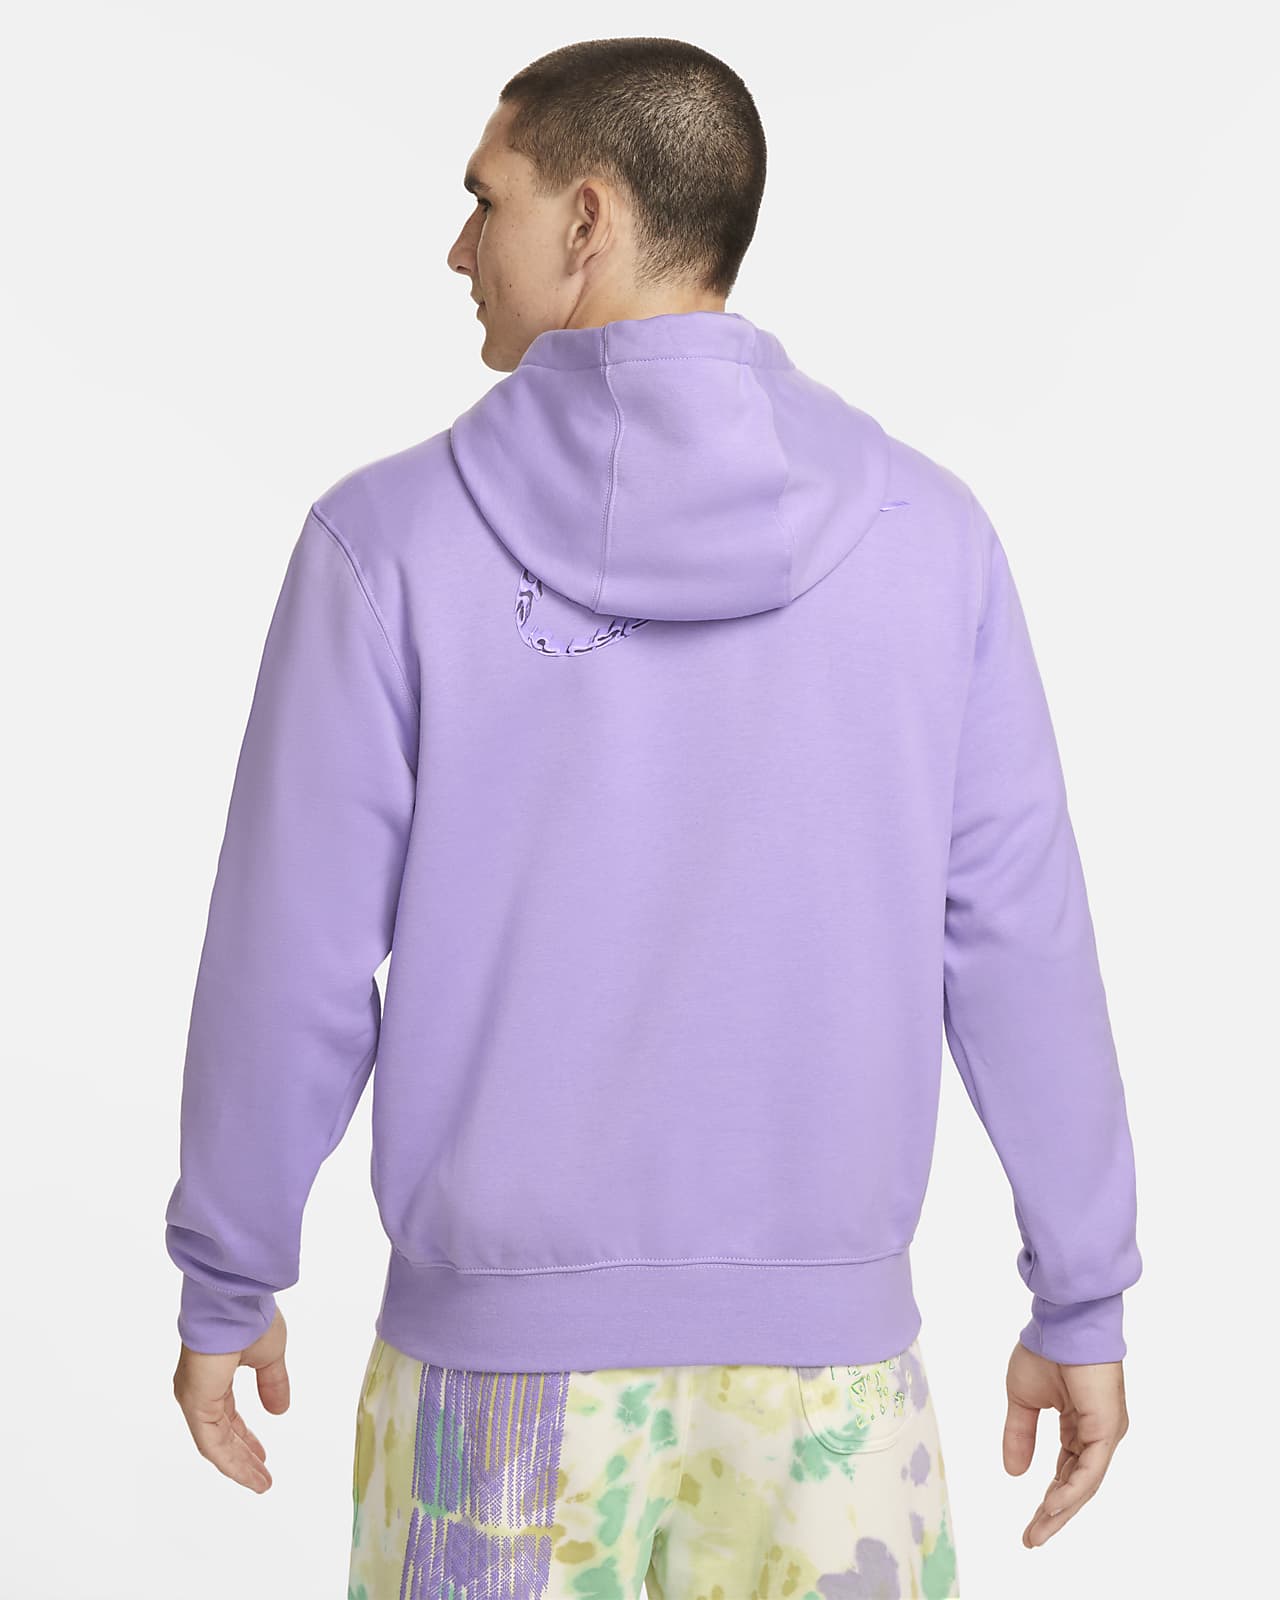 Sportswear Club Fleece Pullover Hoodie by Nike Online